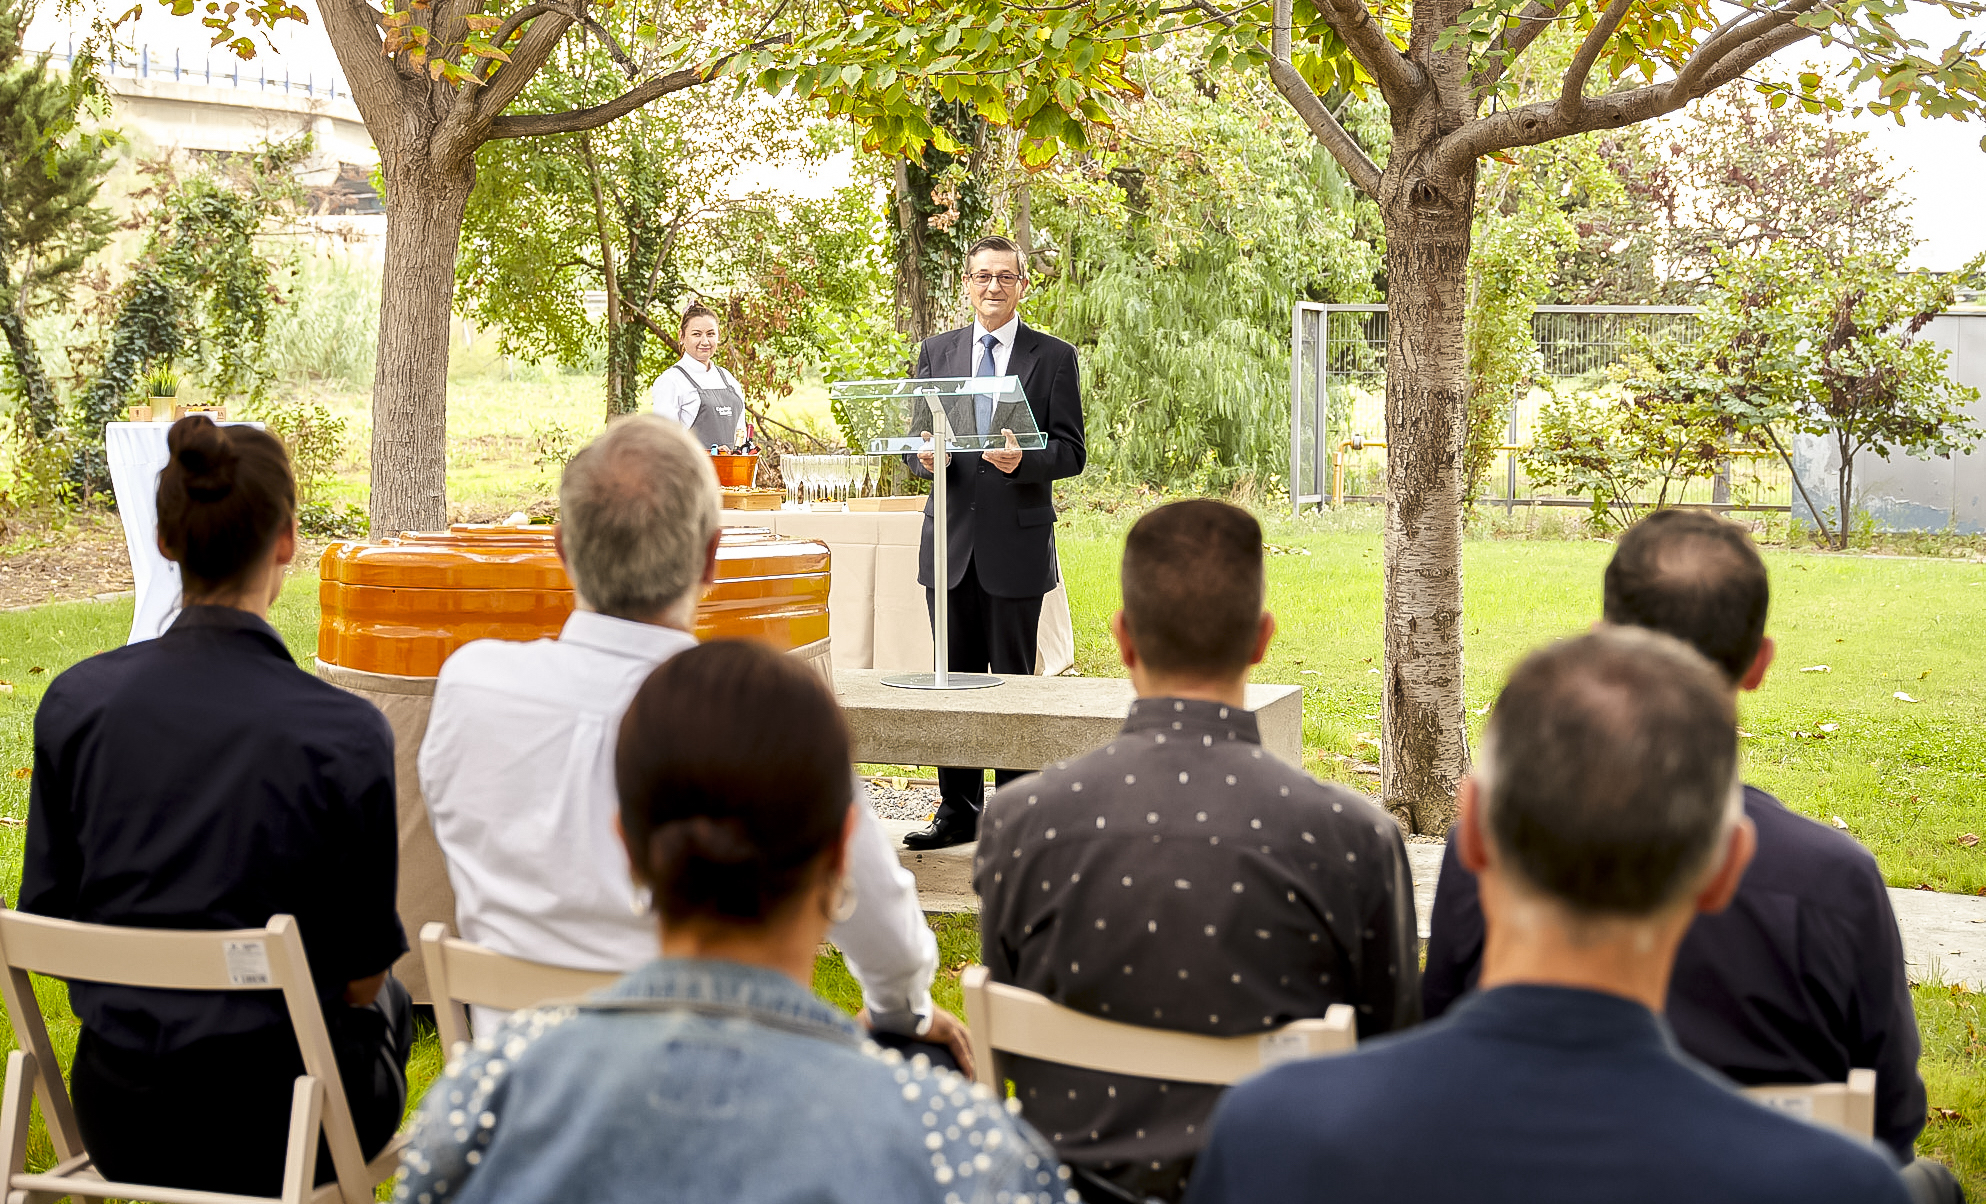 Áltima presenta un nuevo espacio para ceremonias al aire libre en el Tanatorio-Crematorio L'Hospitalet Gran Vía (Barcelona)